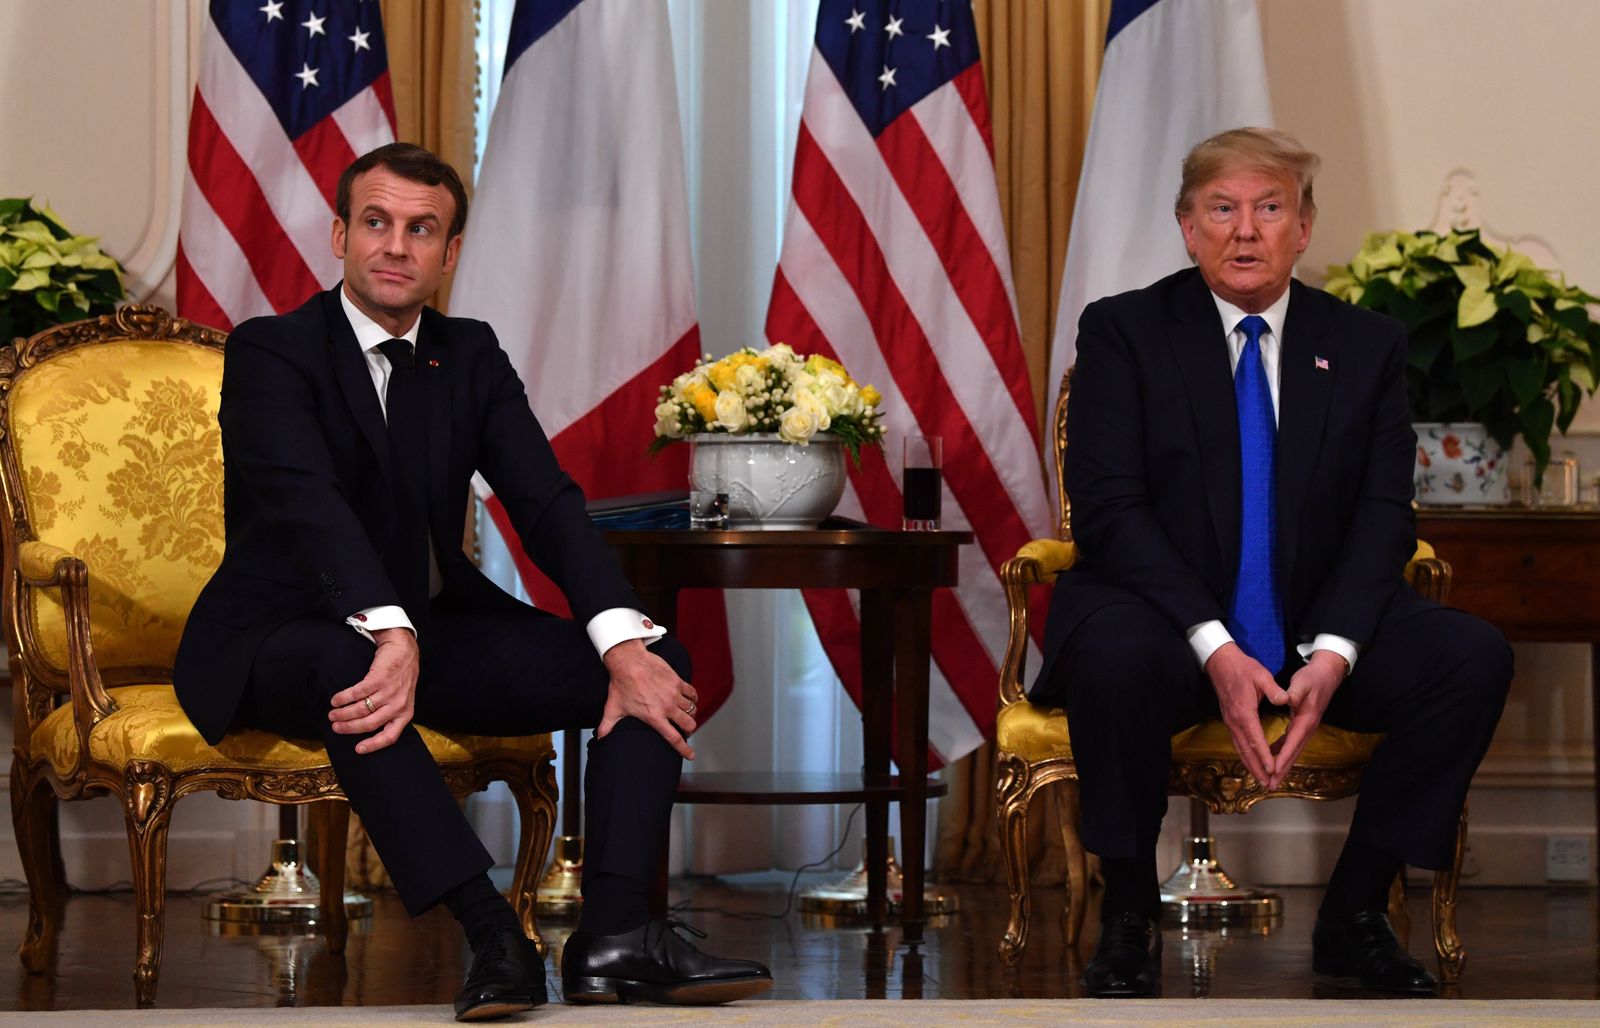 الرئيس الفرنسي إيمانويل ماكرون رفقة الرئيس الأميركي دونالد ترامب